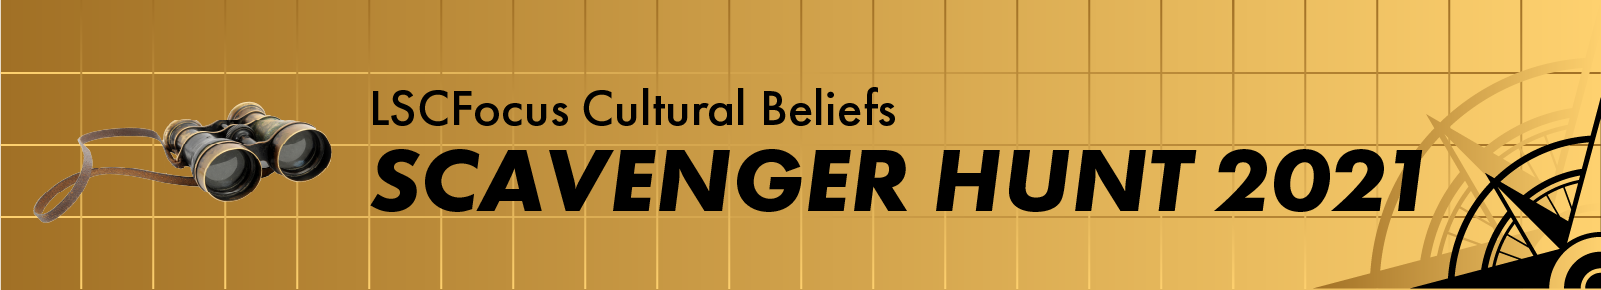 LSCFocus Cultural Beliefs Scavenger Hunt 2021 Banner